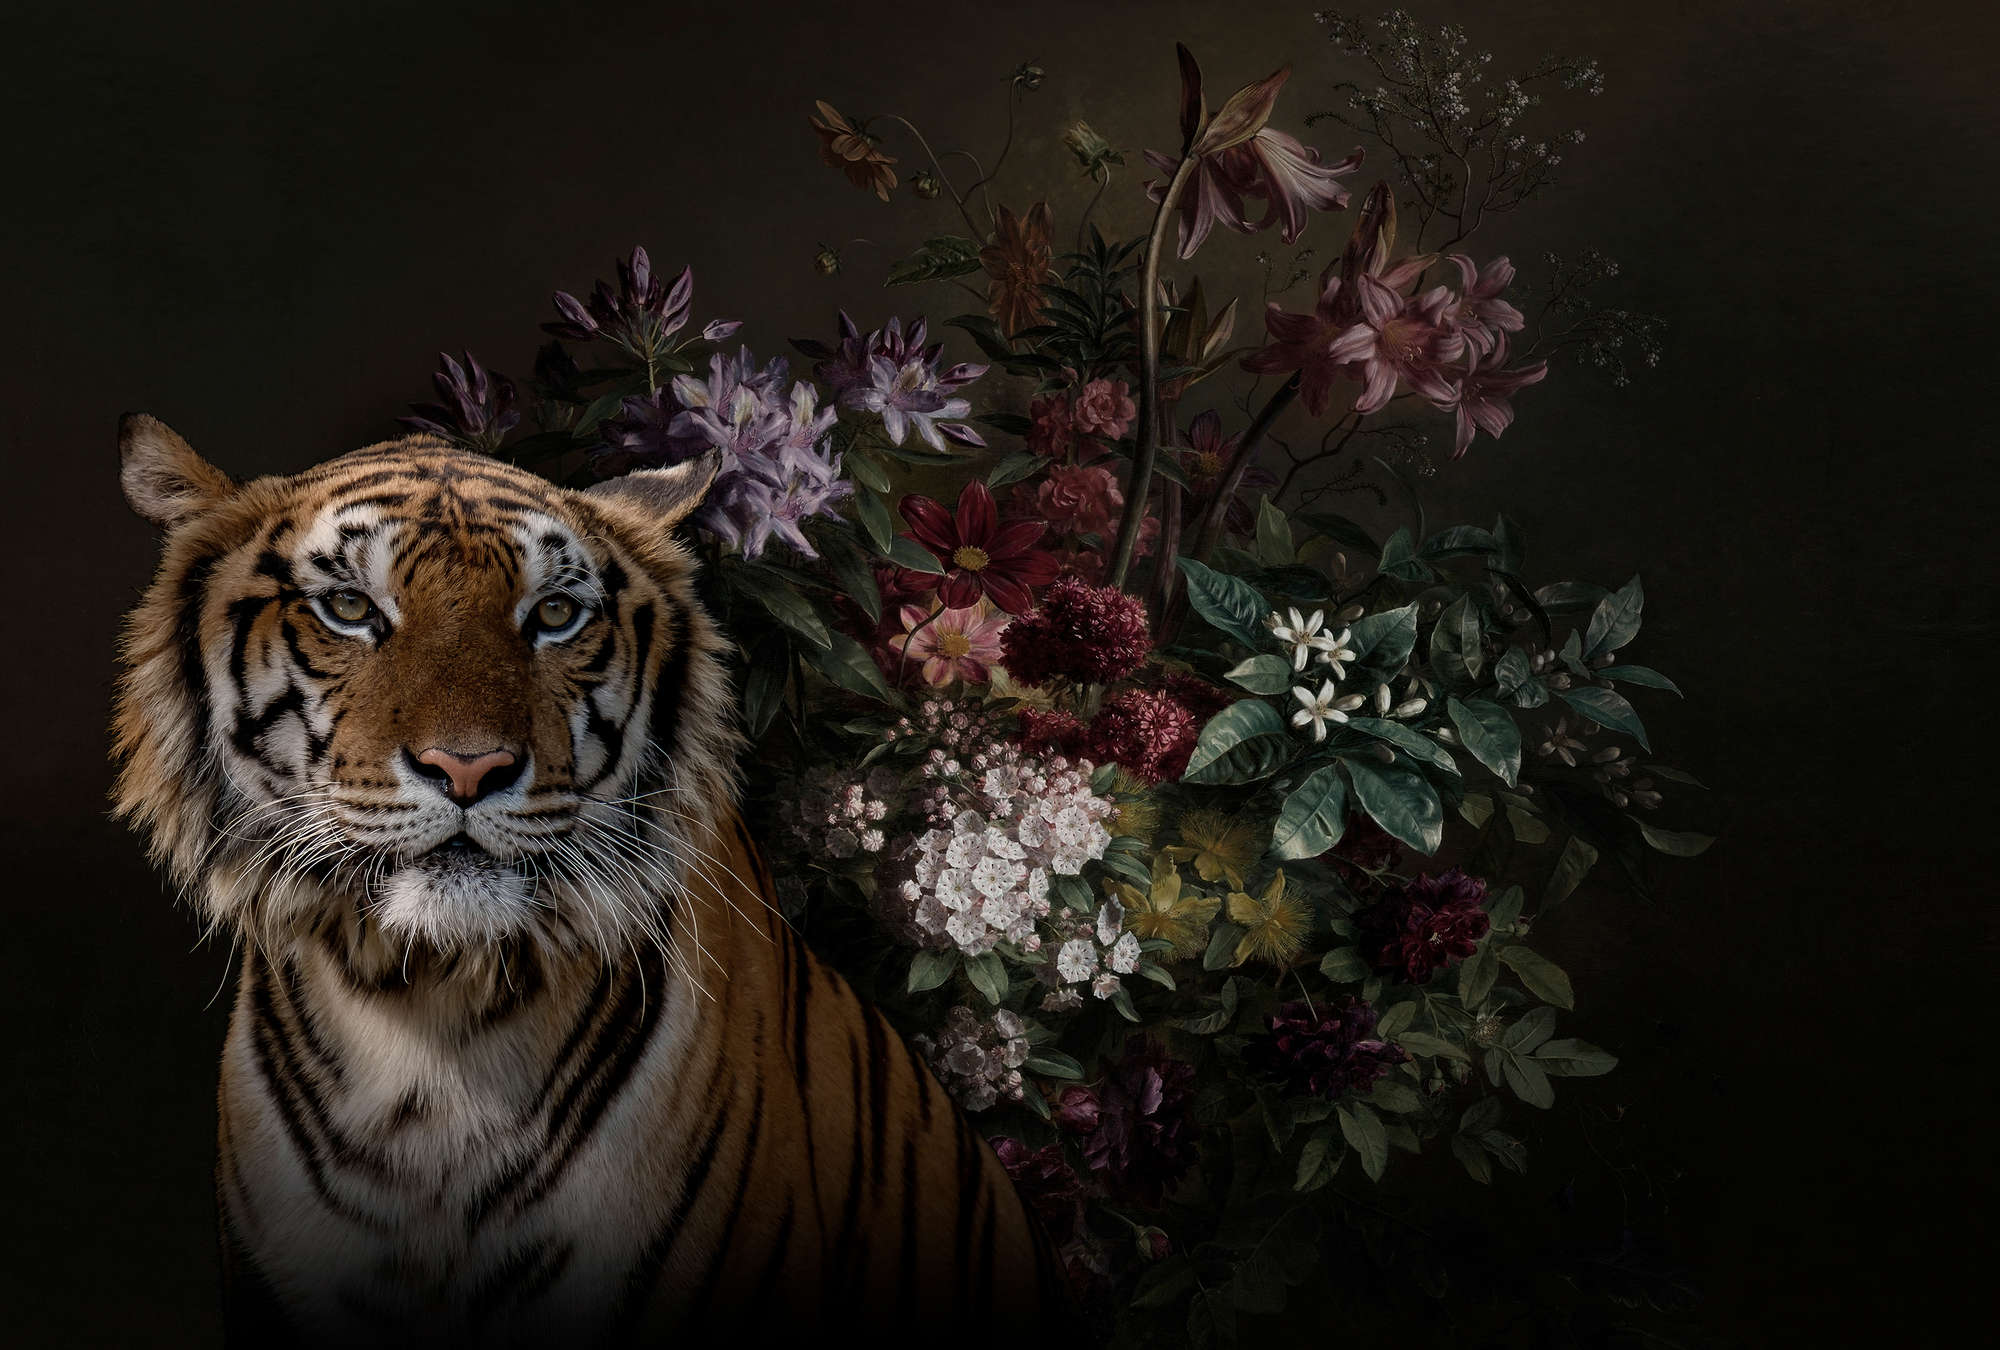             Mural de pared Retrato de tigre con flores - Walls by Patel
        